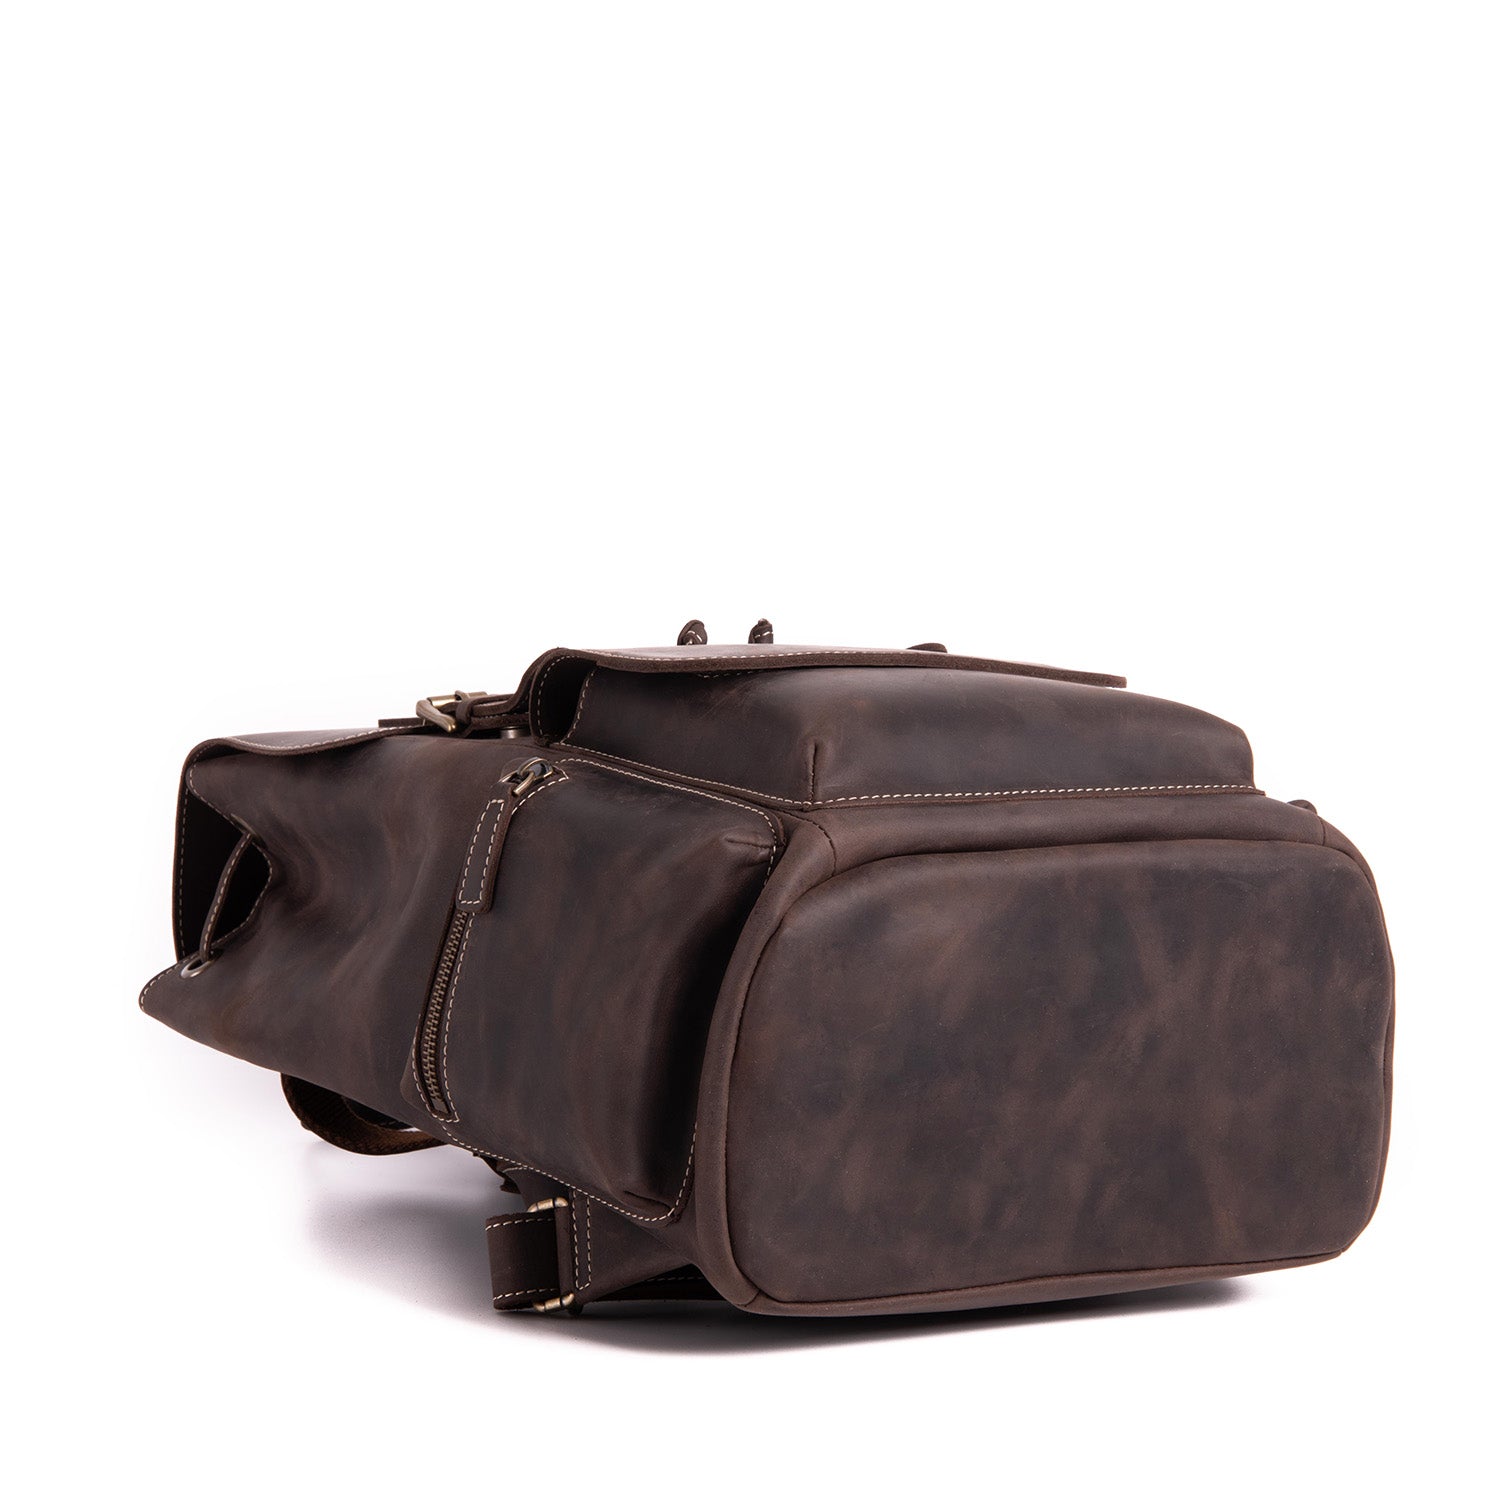 Full Grain Leather Backpack in Chestnut